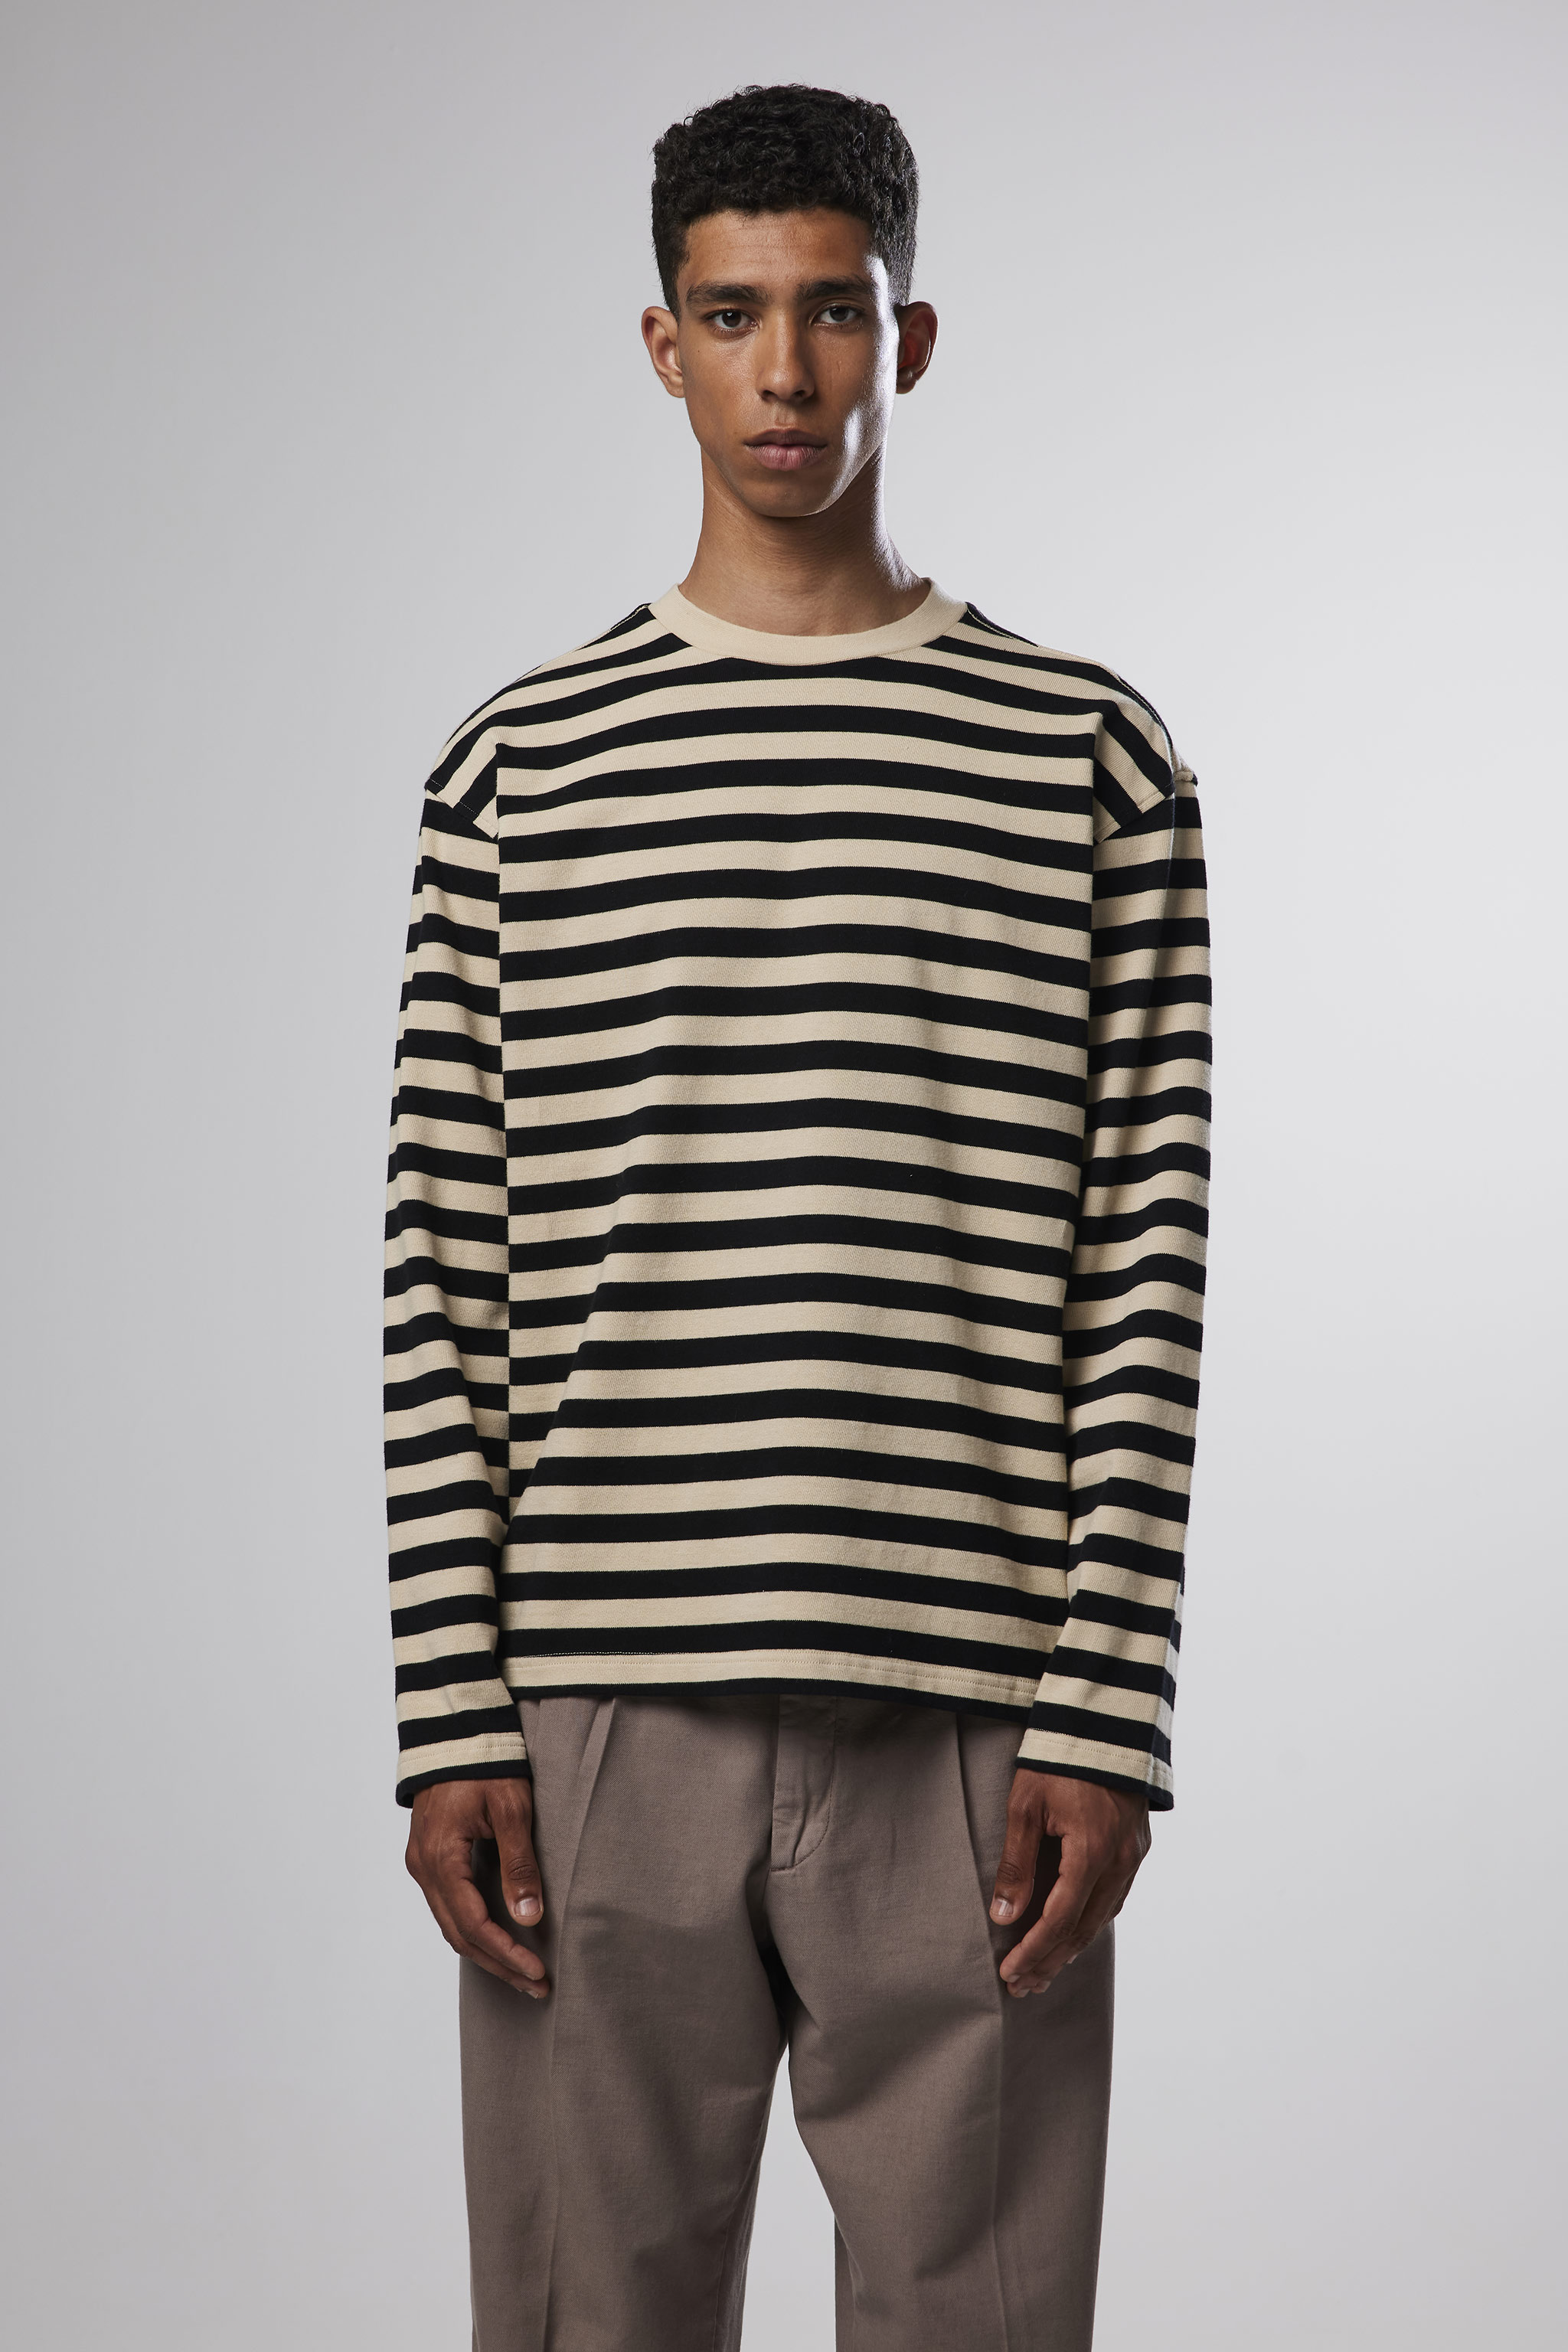 Tim 3449 men's sweatshirt - Multi Stripe - Buy online at NN.07®